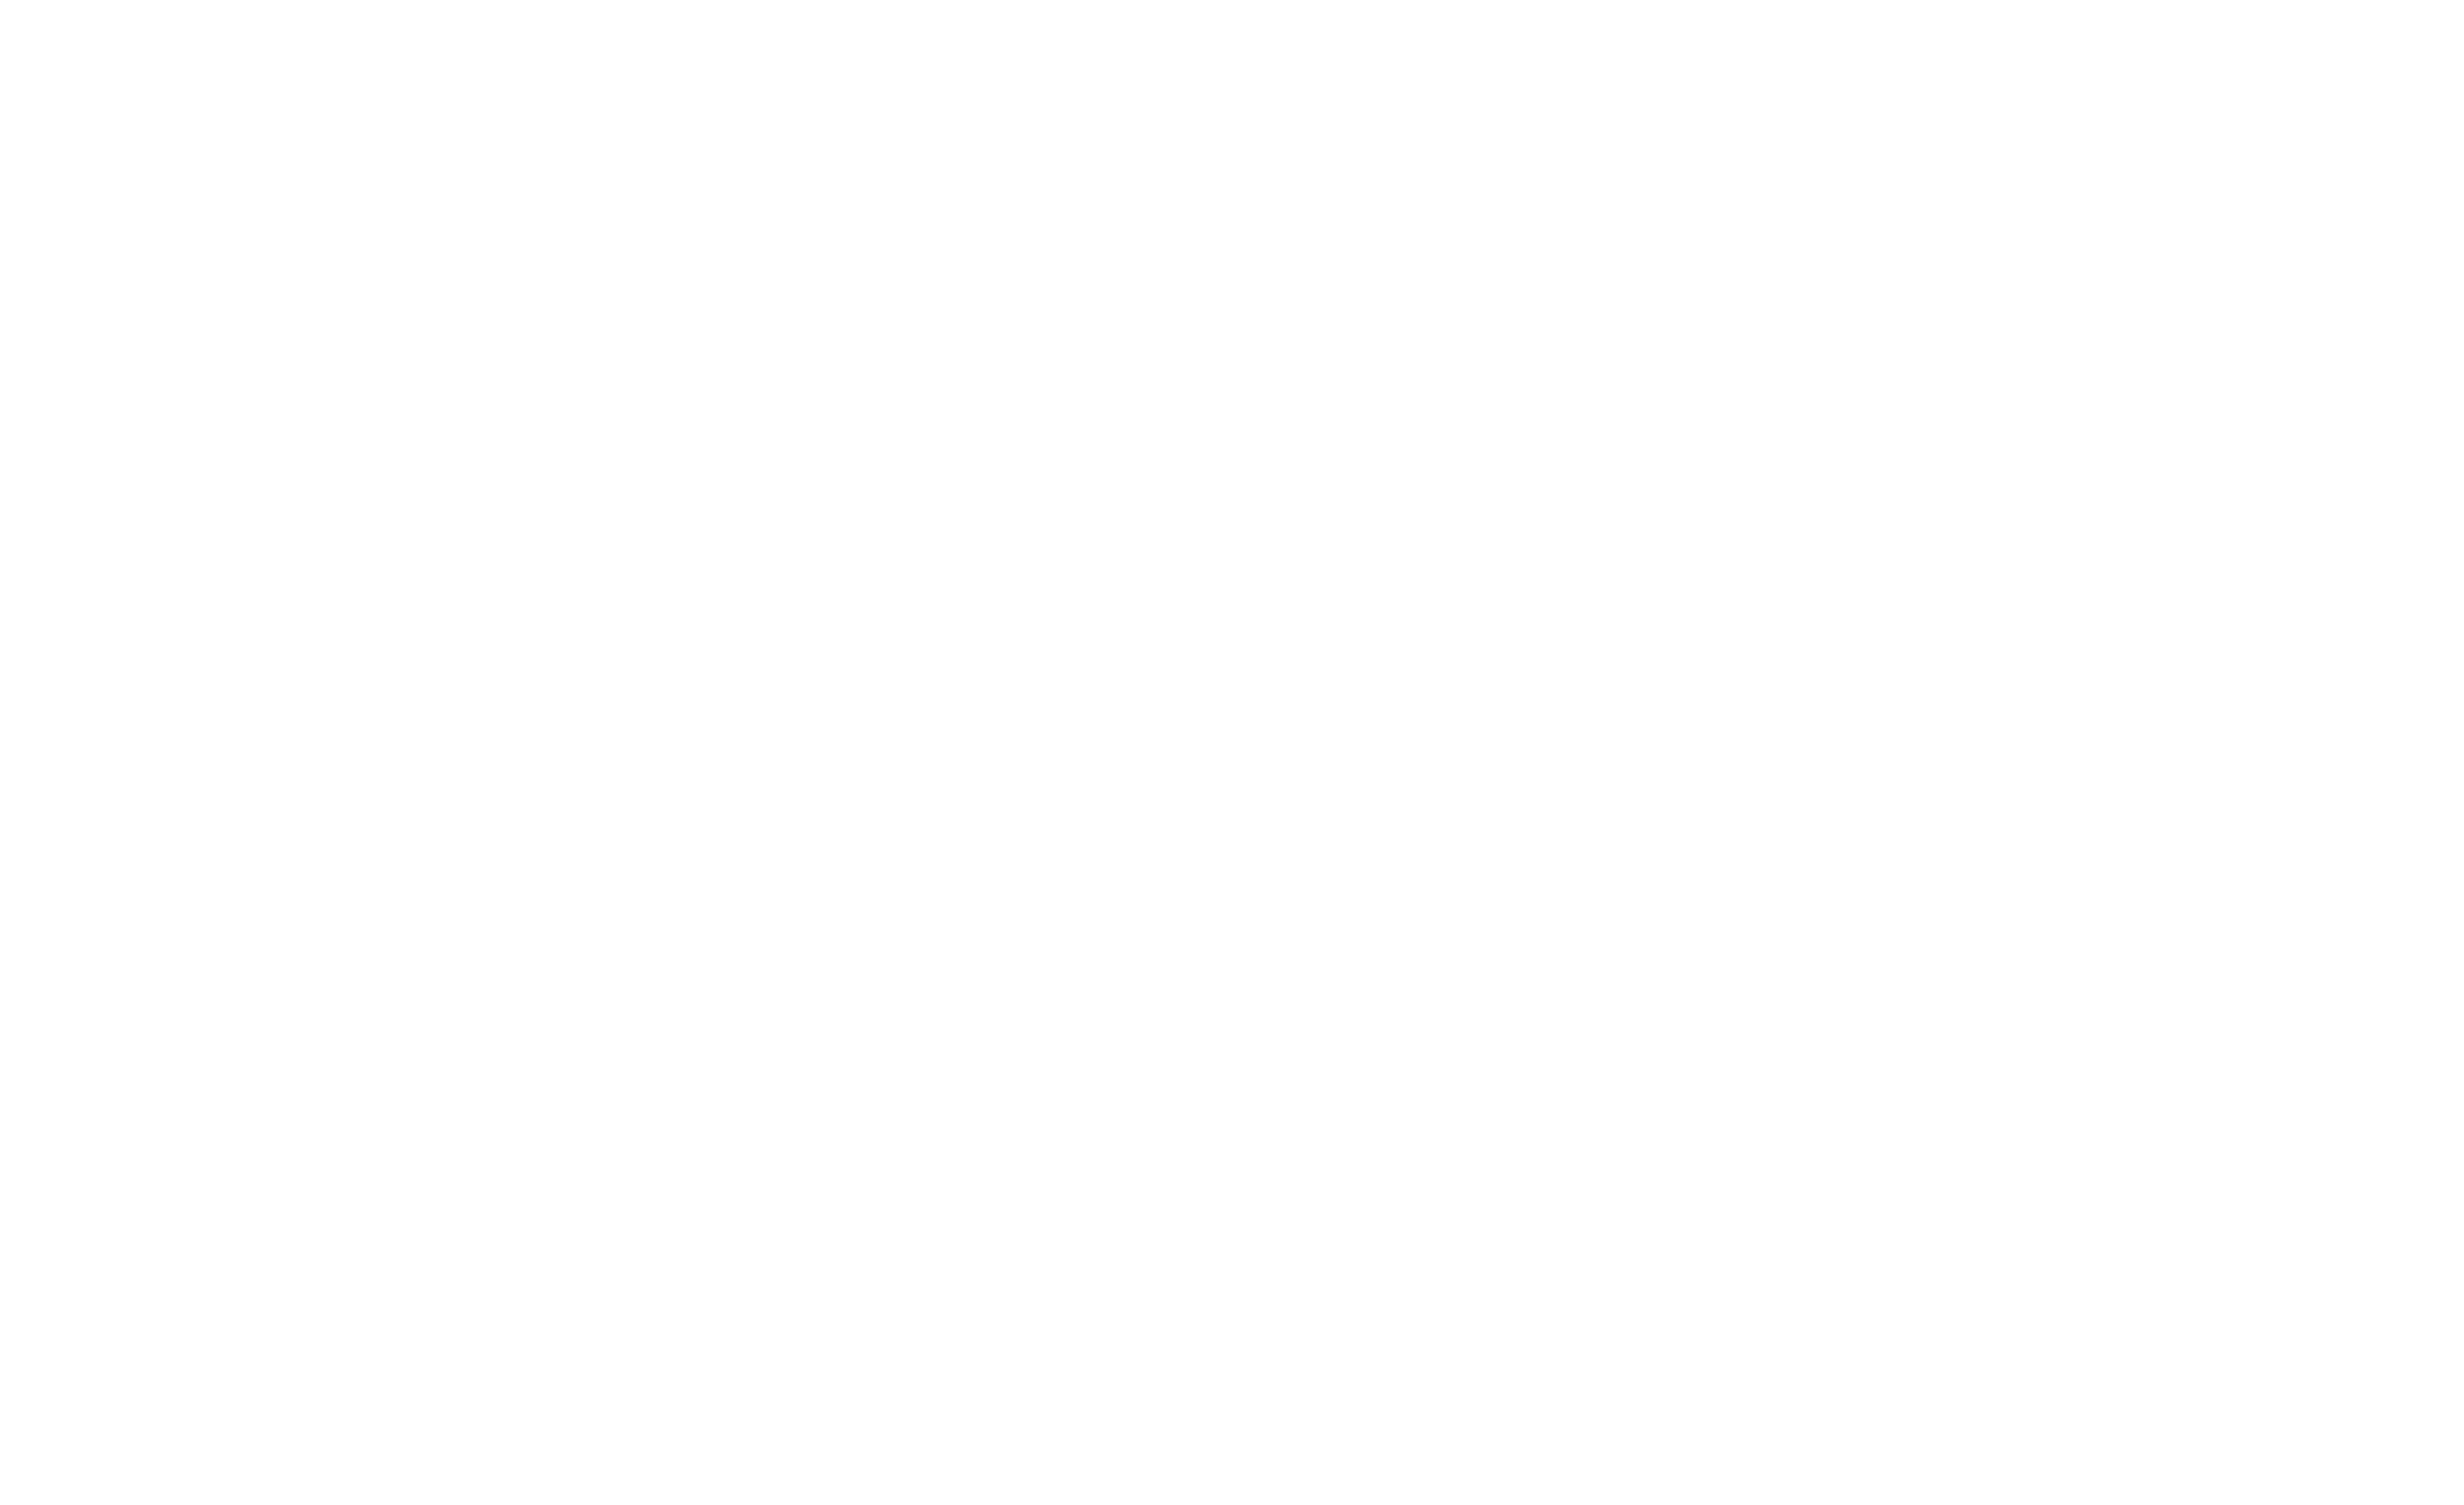 Rachel's Action Network